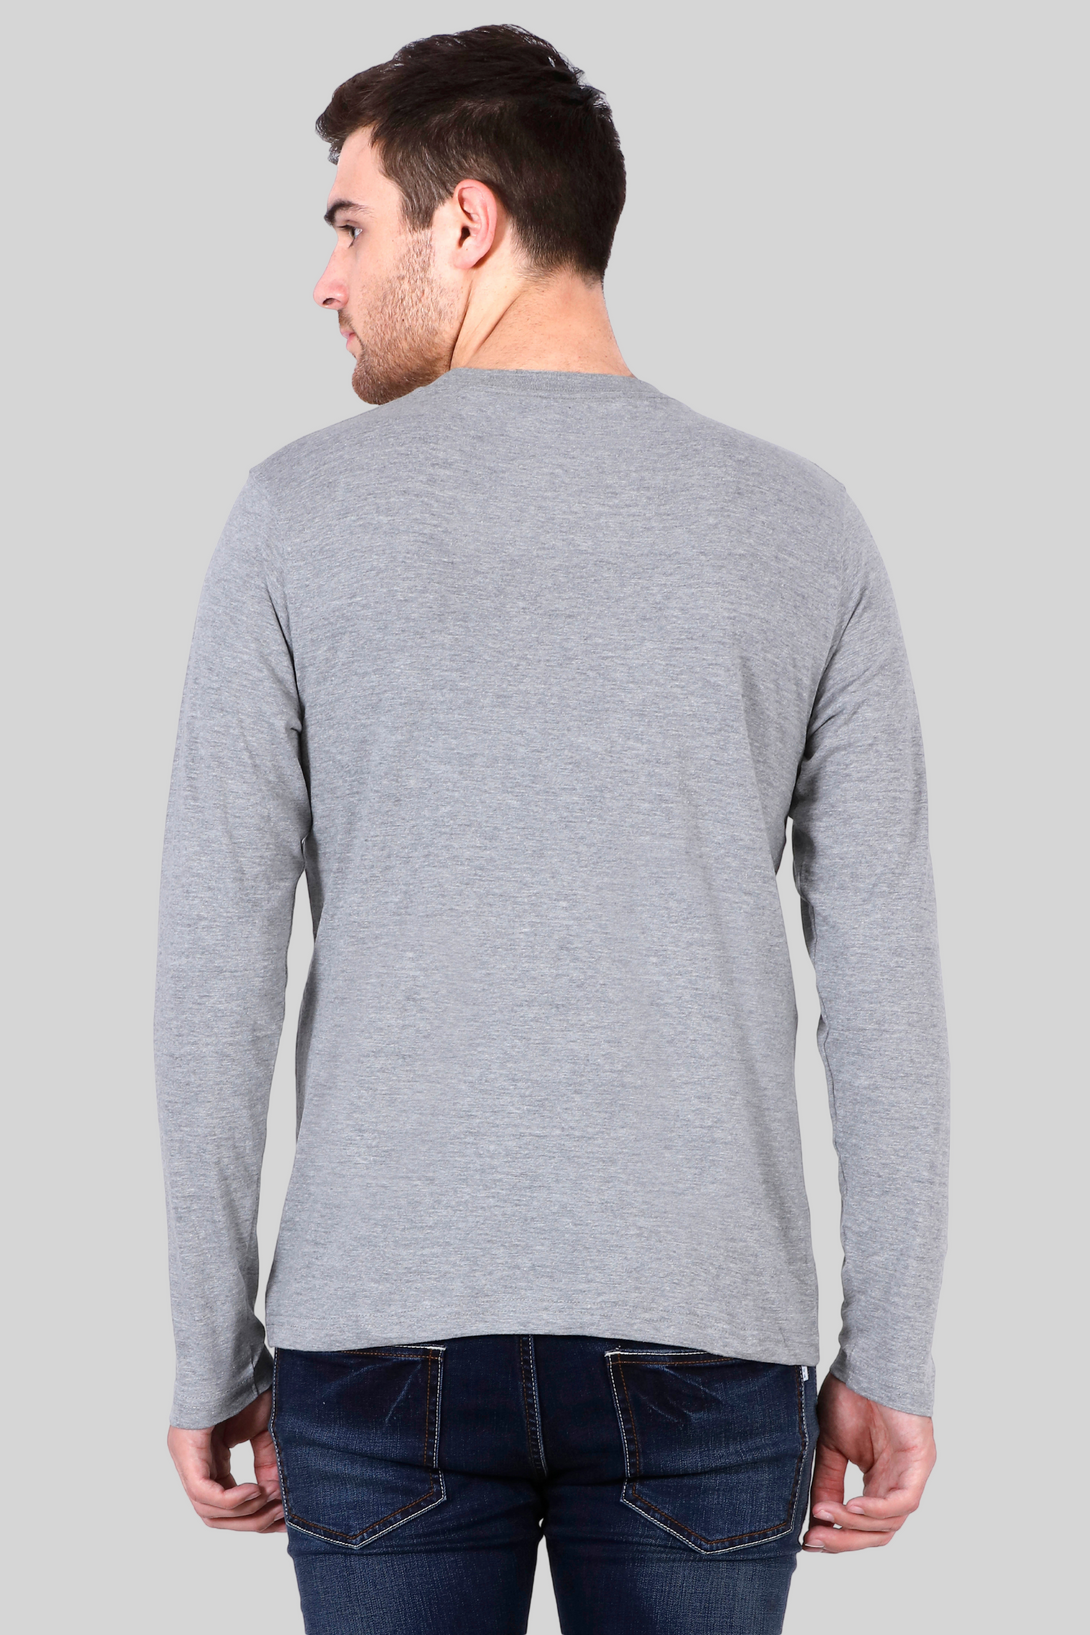 Grey Melange Full Sleeve T-Shirt For Men - WowWaves - 7